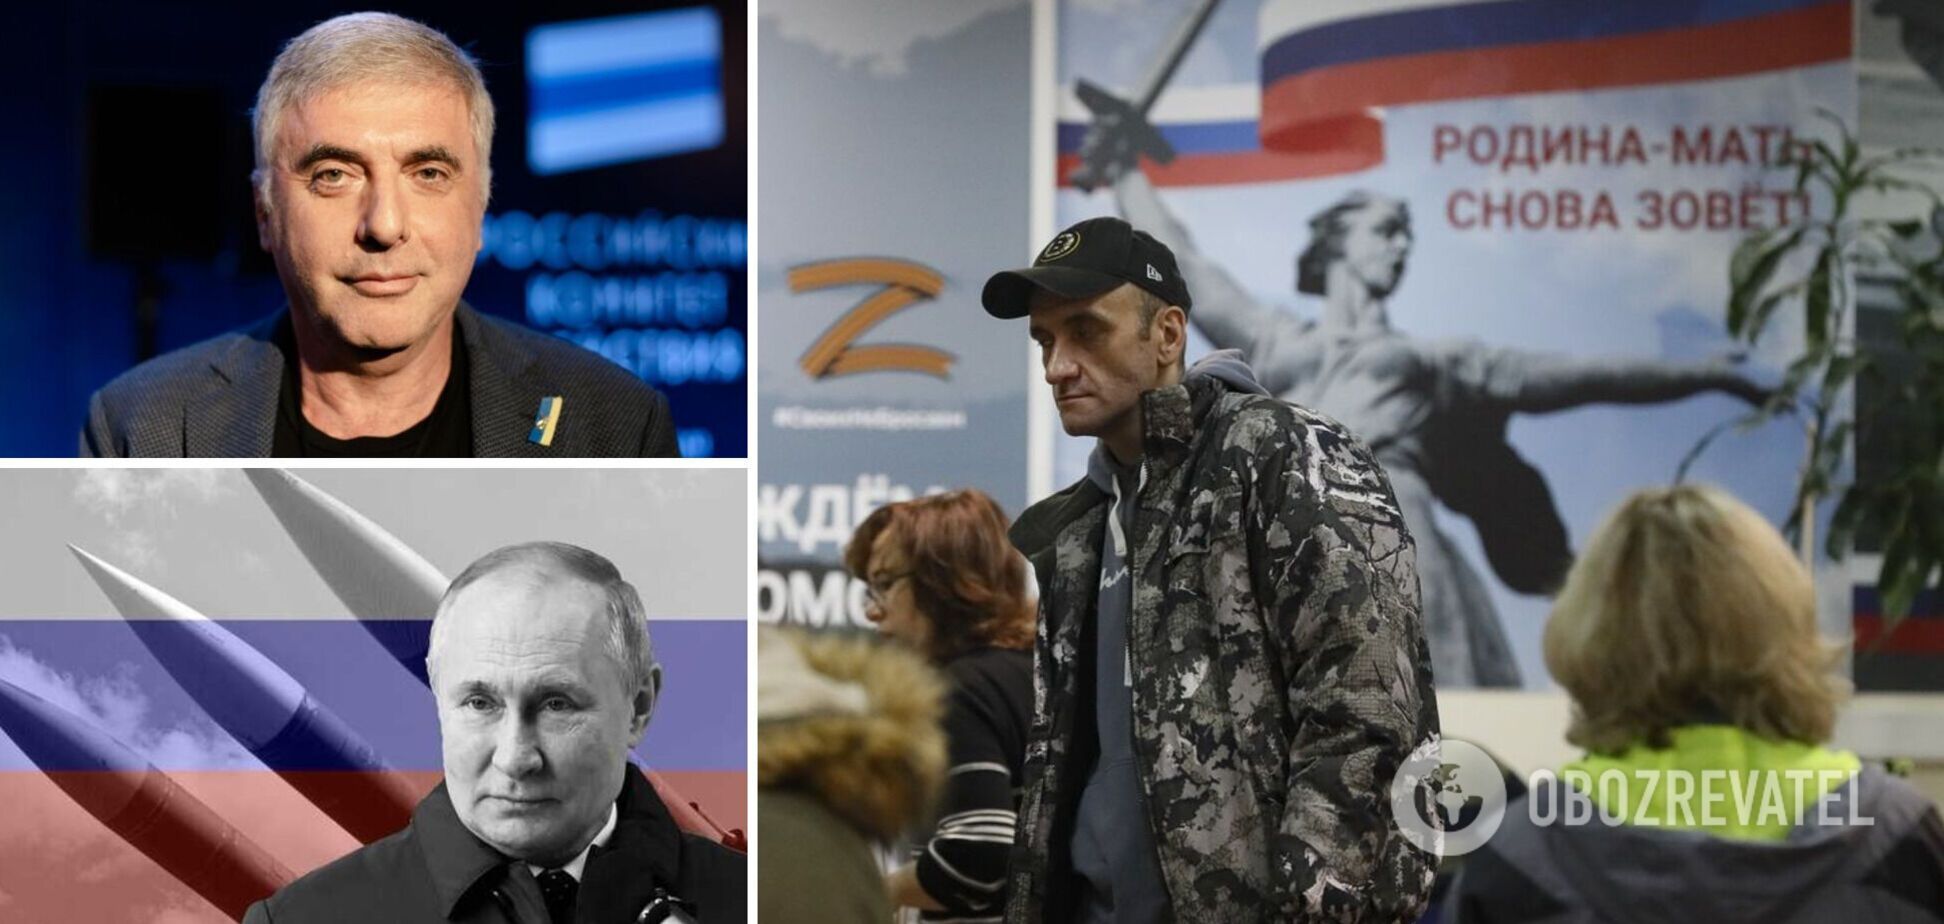 На Путина могут давить по применению ядерного оружия: Невзлин рассказал, кто руководит 'партией войны' в РФ